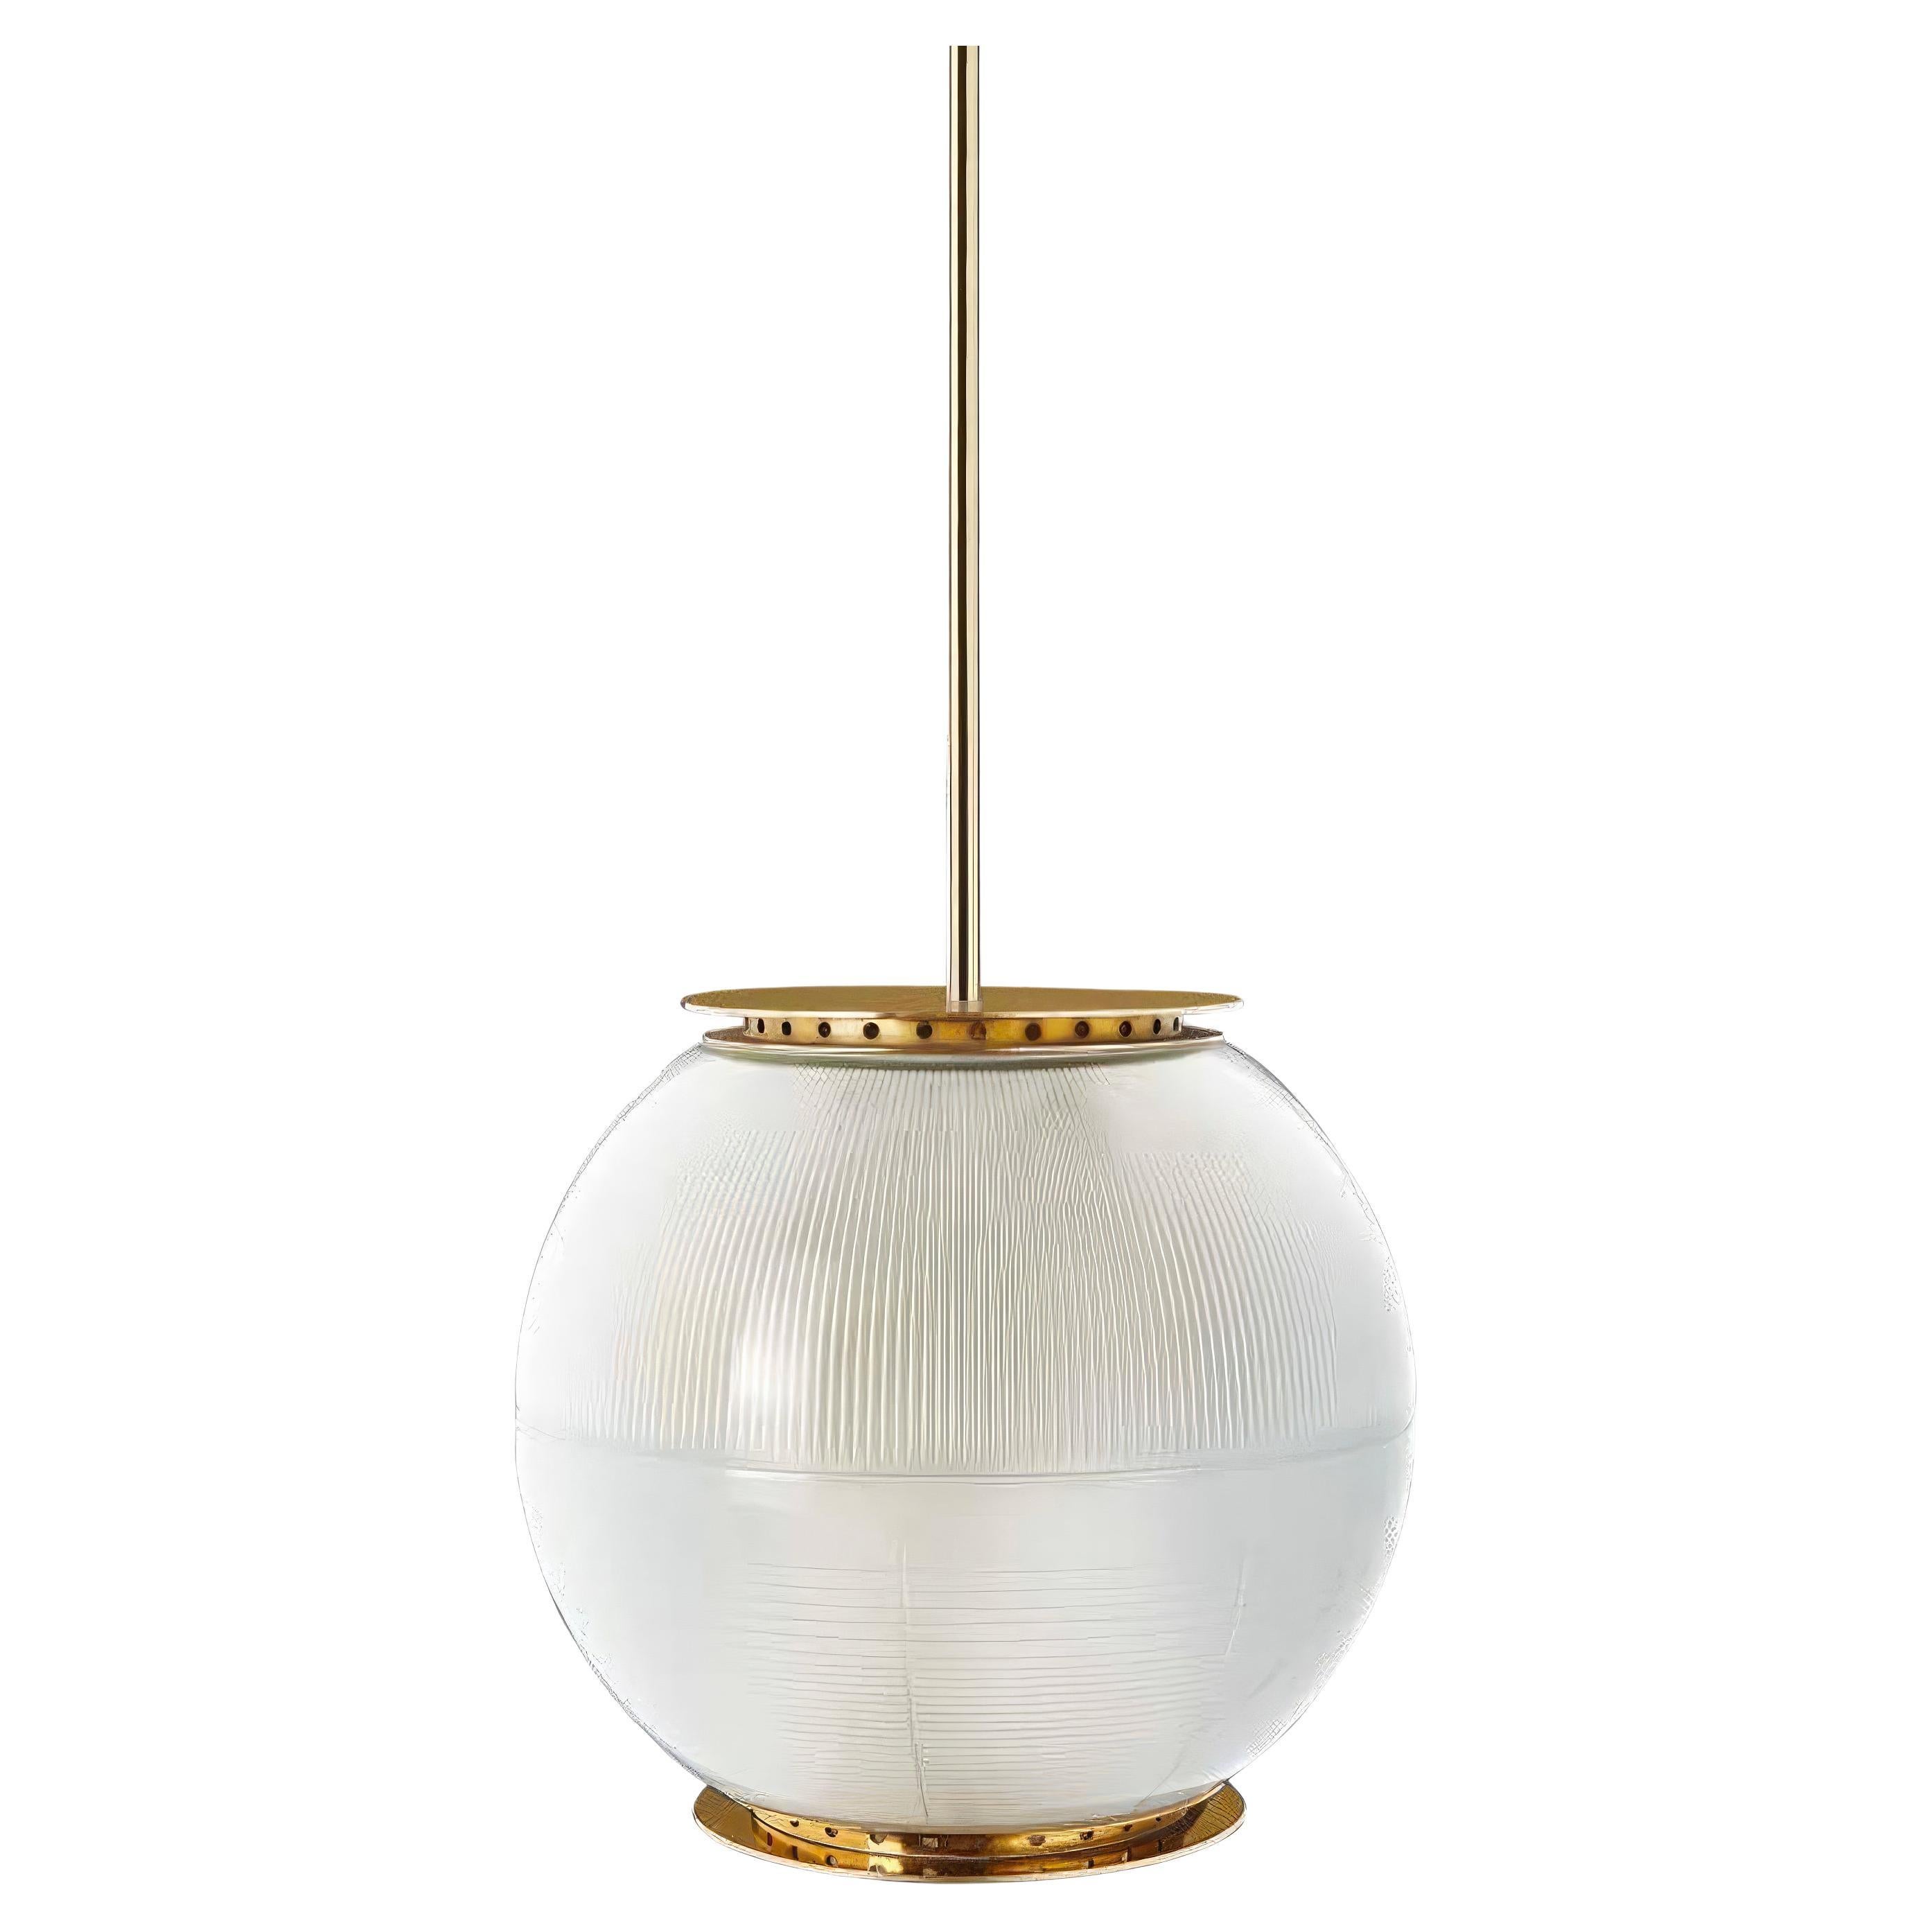 Ignazio Gardella 'Doppio Vetro' Pendant Lamp in Brass and Glass for Tato Italia For Sale